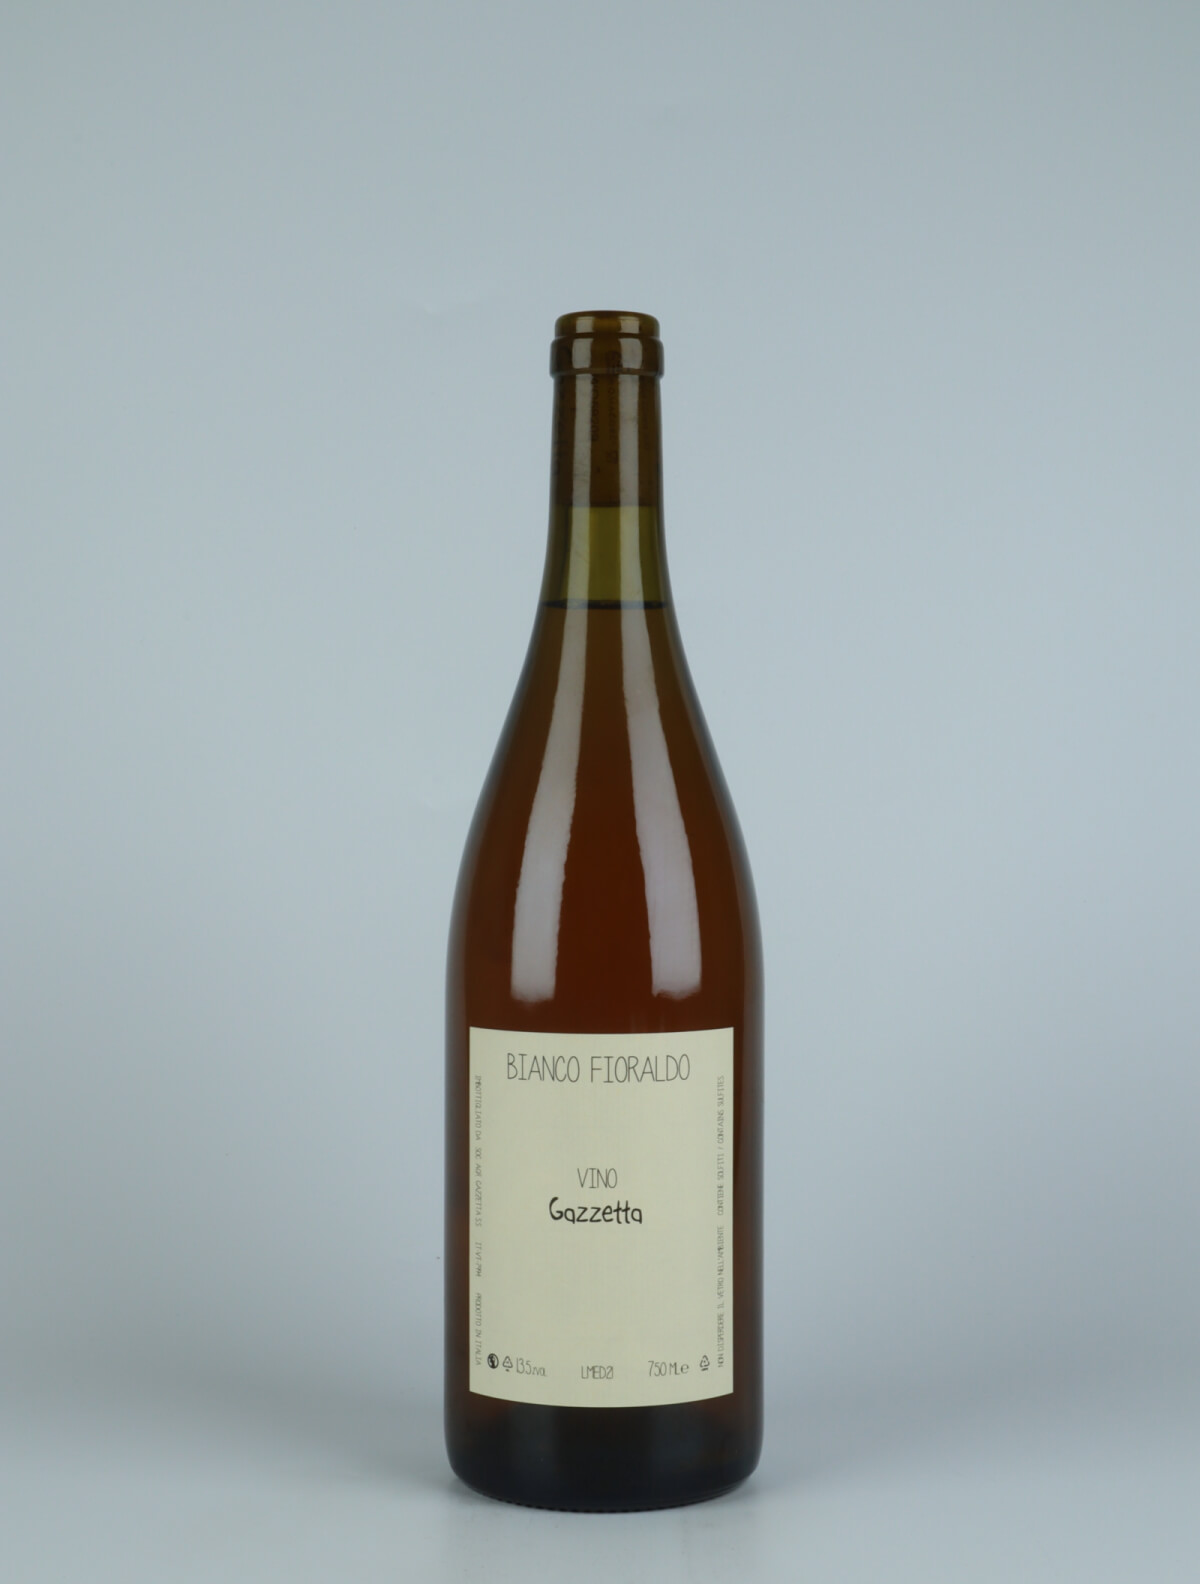 A bottle 2021 Vino Bianco Fioraldo Orange wine from Gazzetta, Lazio in Italy